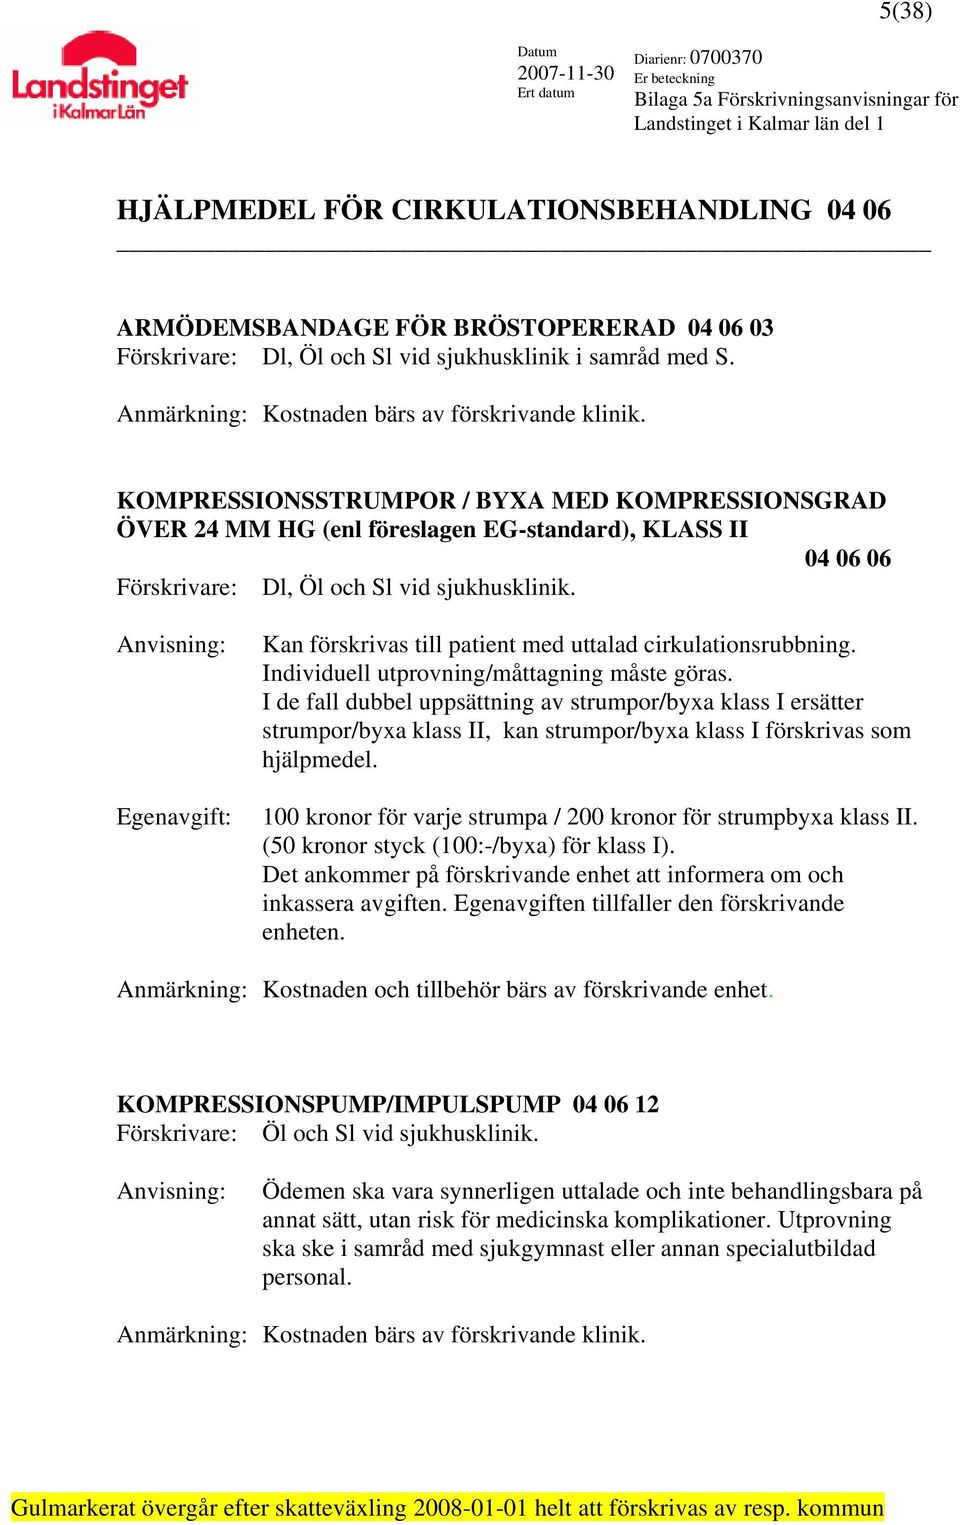 KOMPRESSIONSSTRUMPOR / BYXA MED KOMPRESSIONSGRAD ÖVER 24 MM HG (enl föreslagen EG-standard), KLASS II 04 06 06 Förskrivare: Dl, Öl och Sl vid sjukhusklinik.